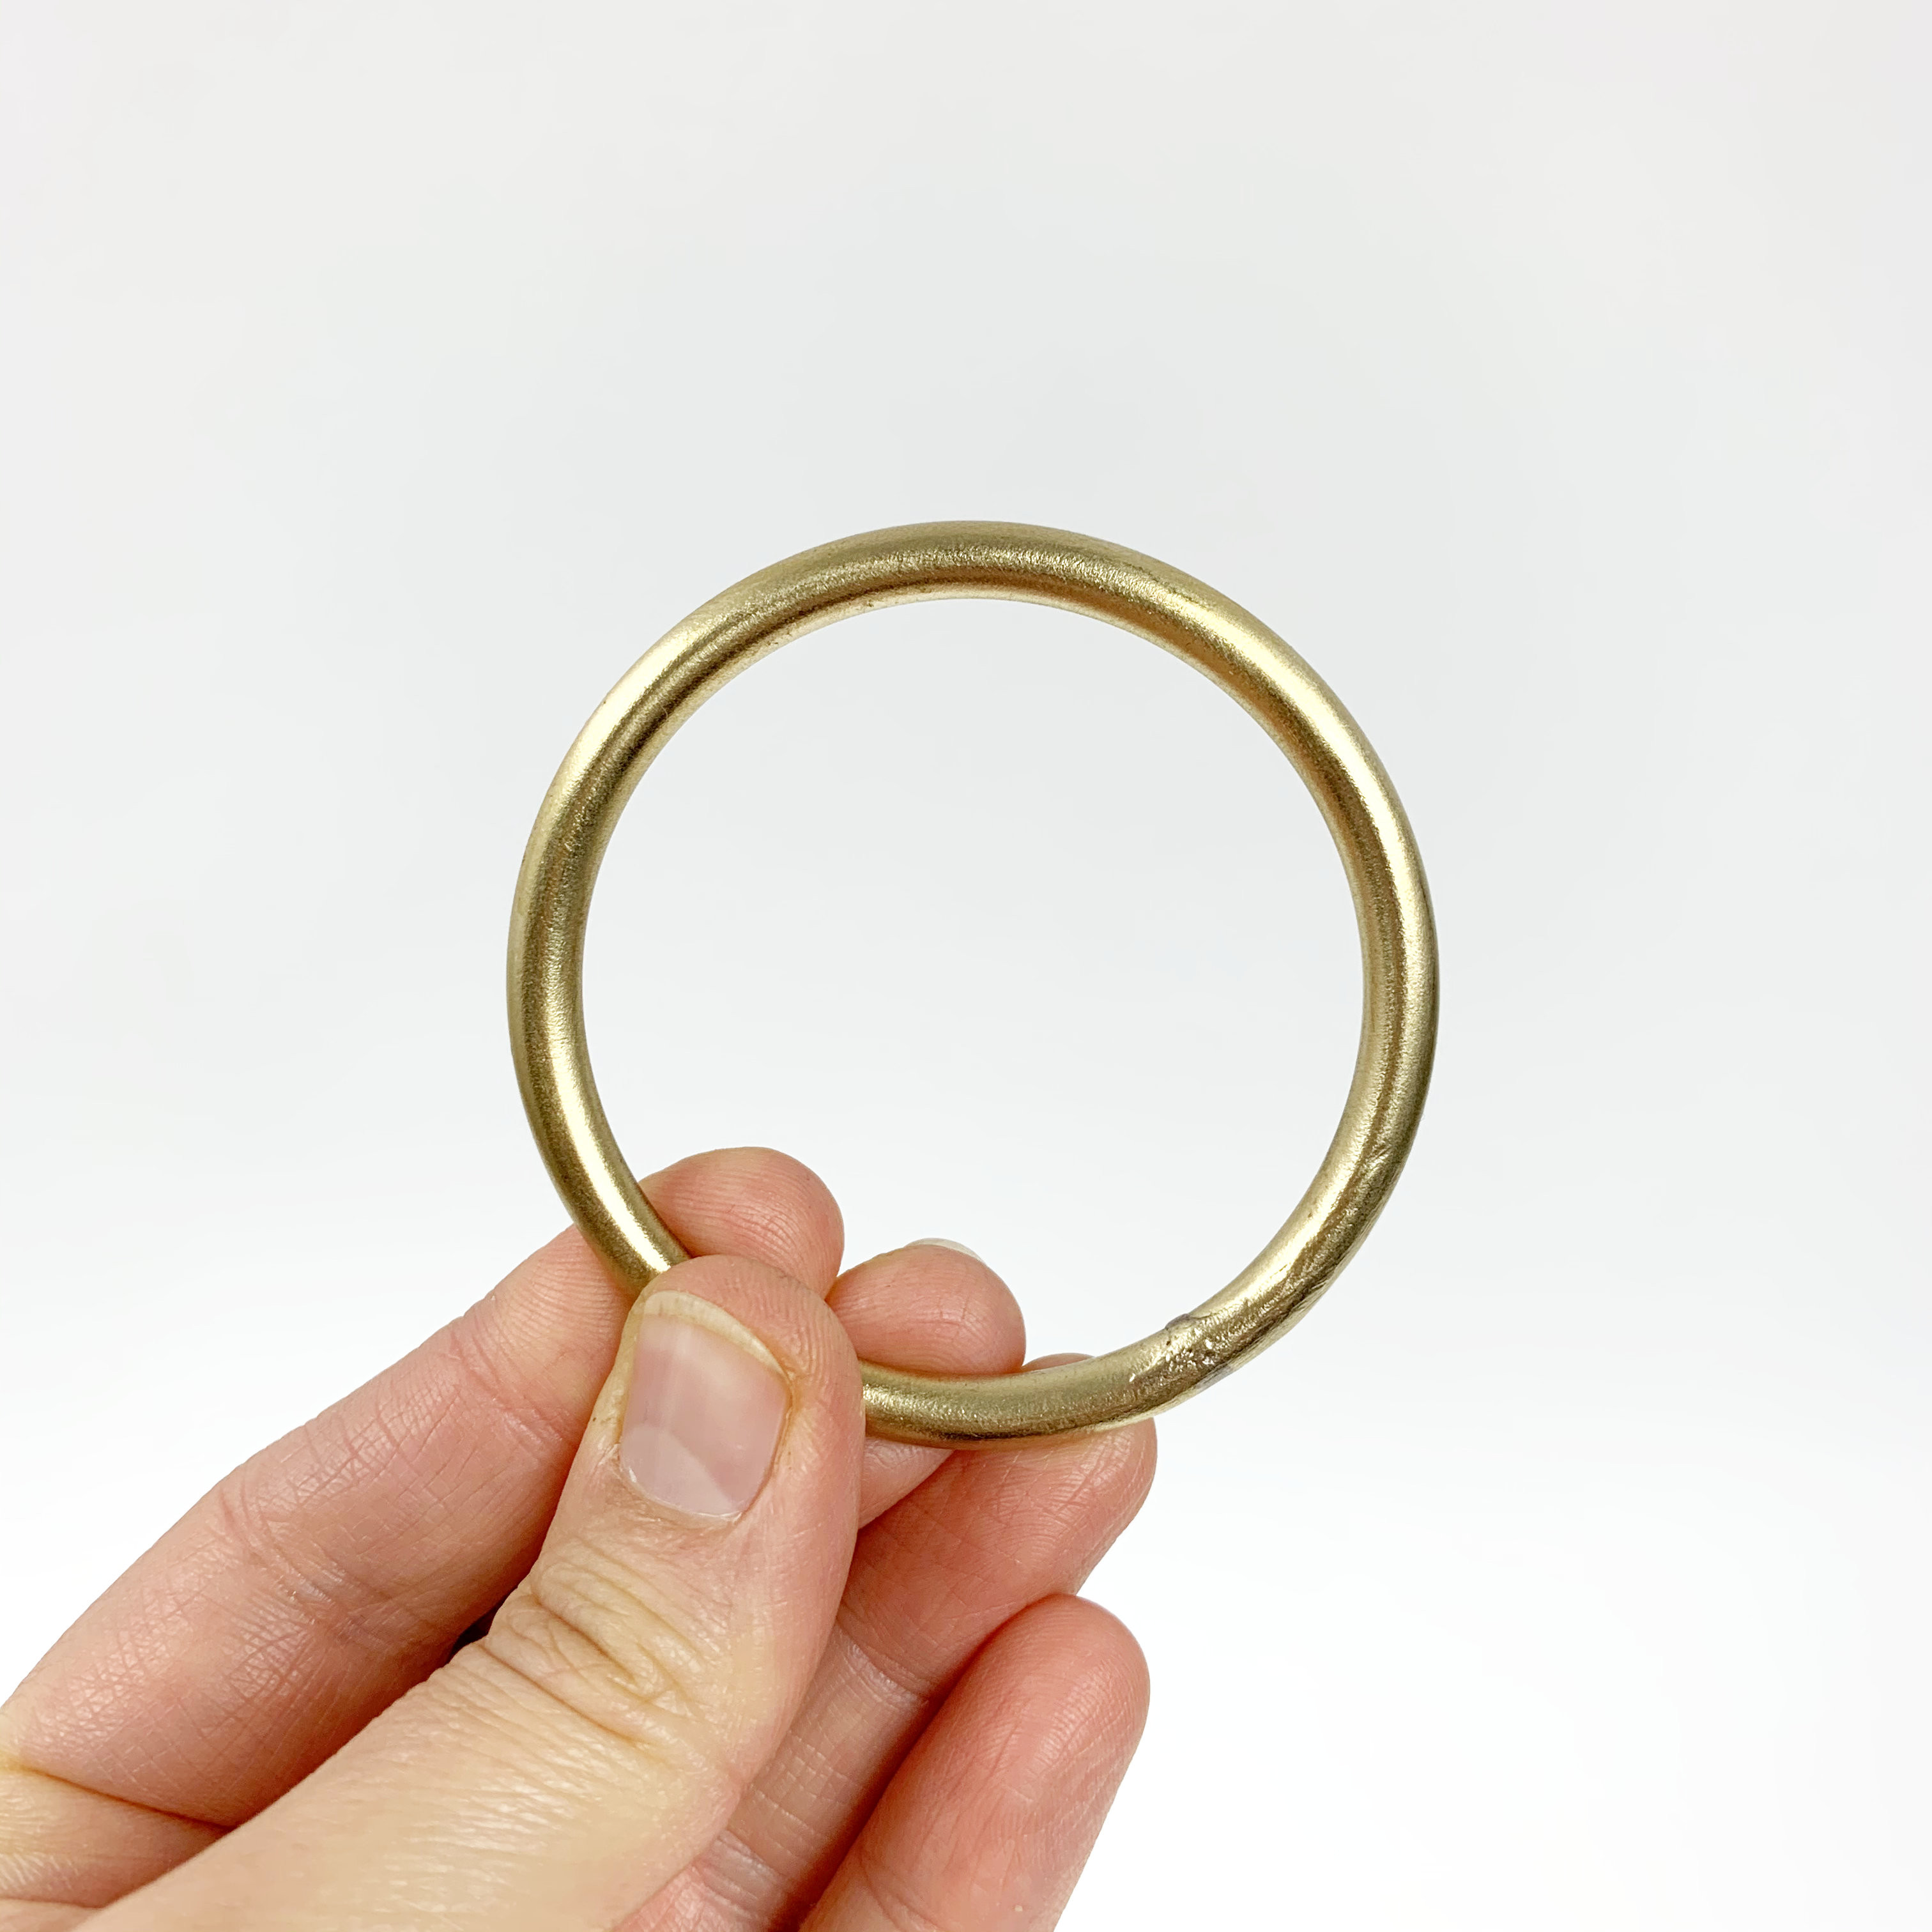 Macrame brass ring - 60mm